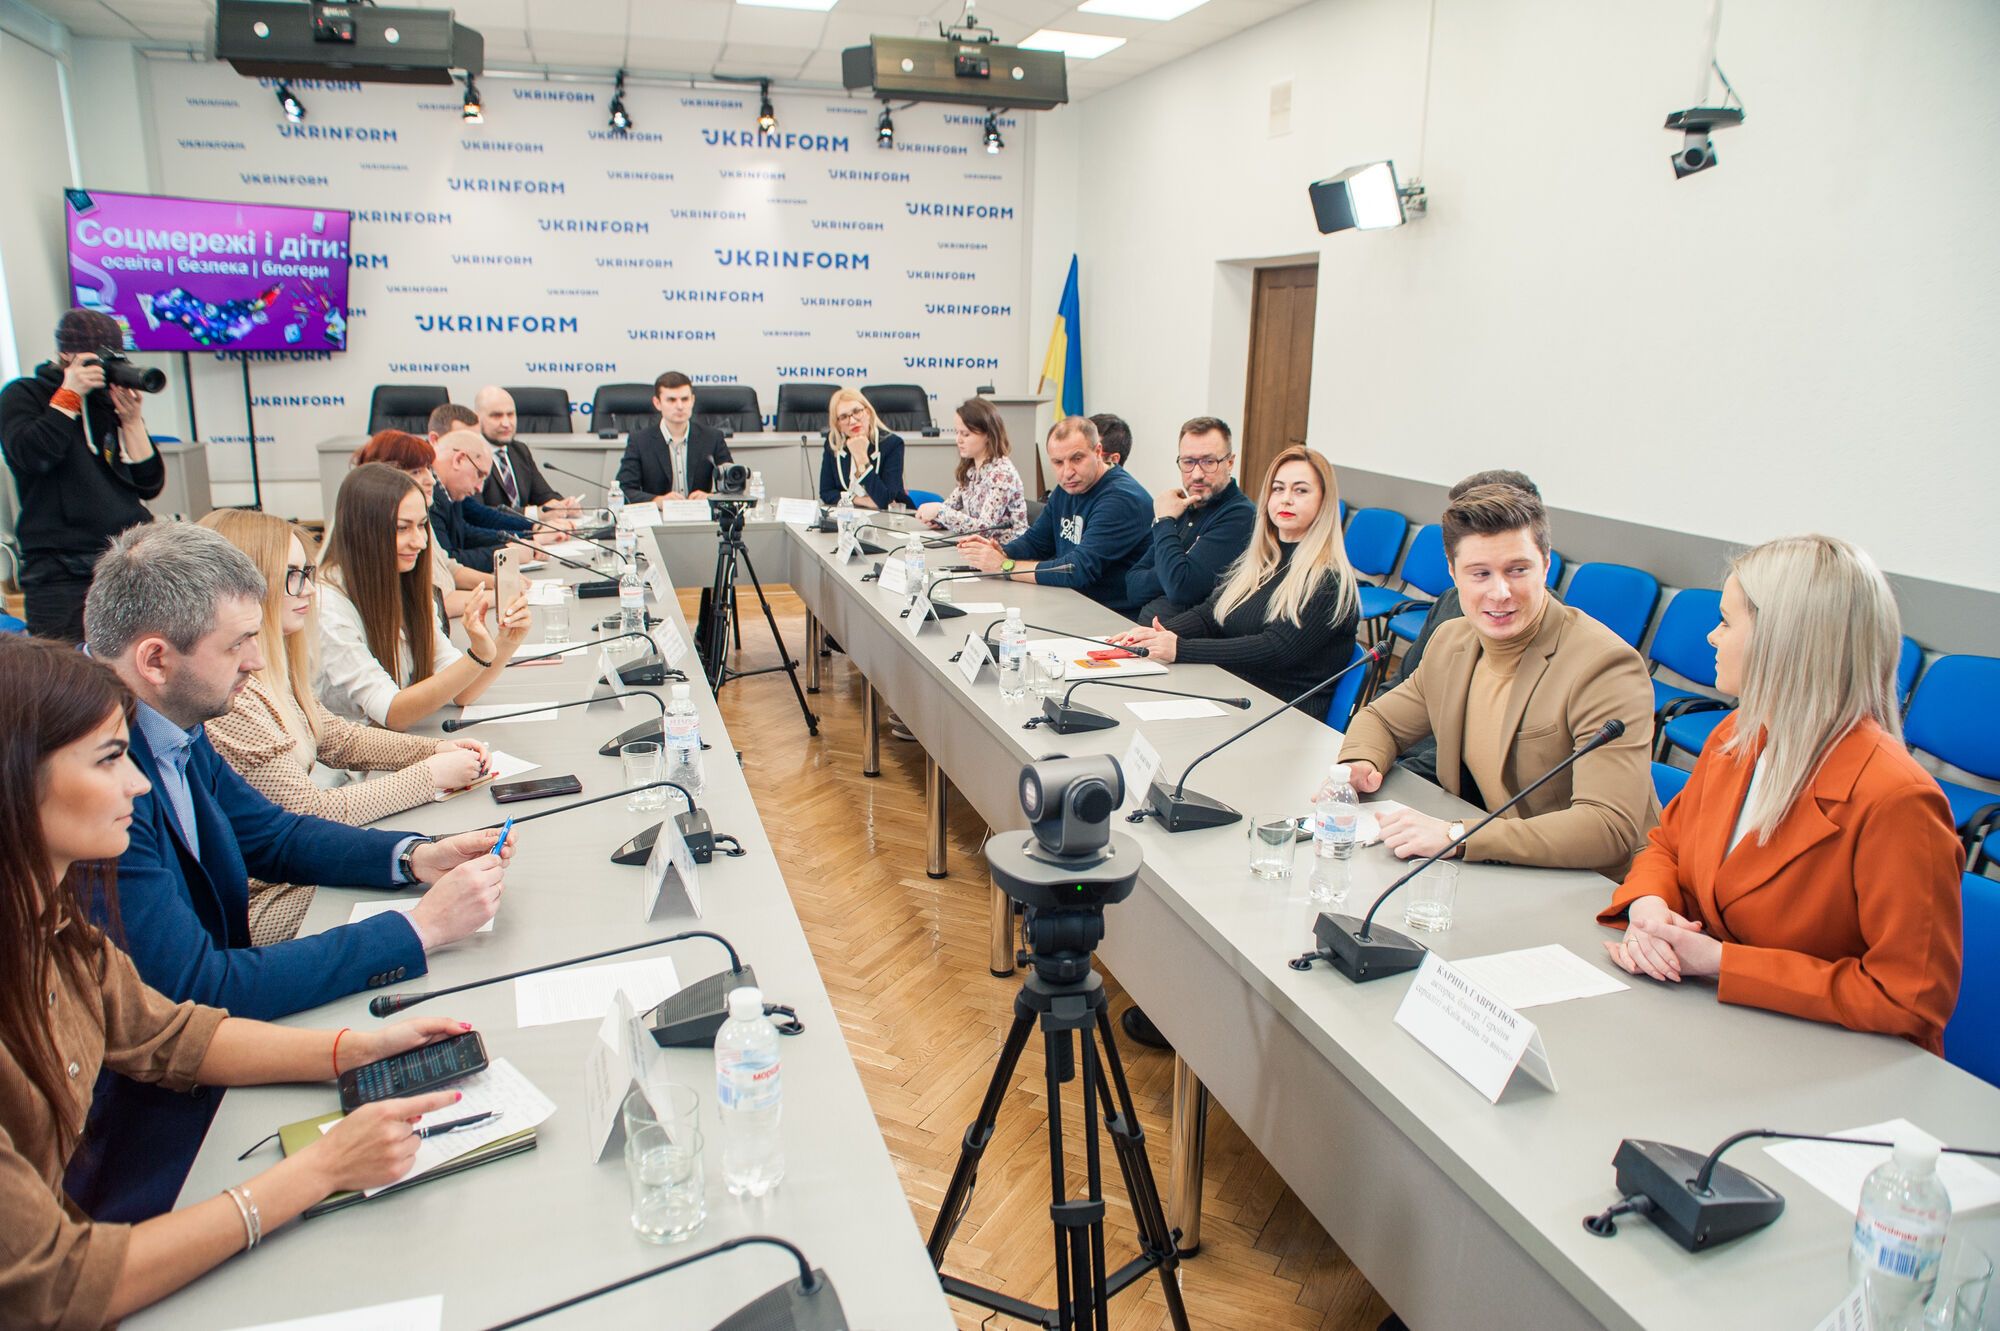 Безопасность детей в соцсетях: в Украине стартовала образовательная платформа "Академия.online"